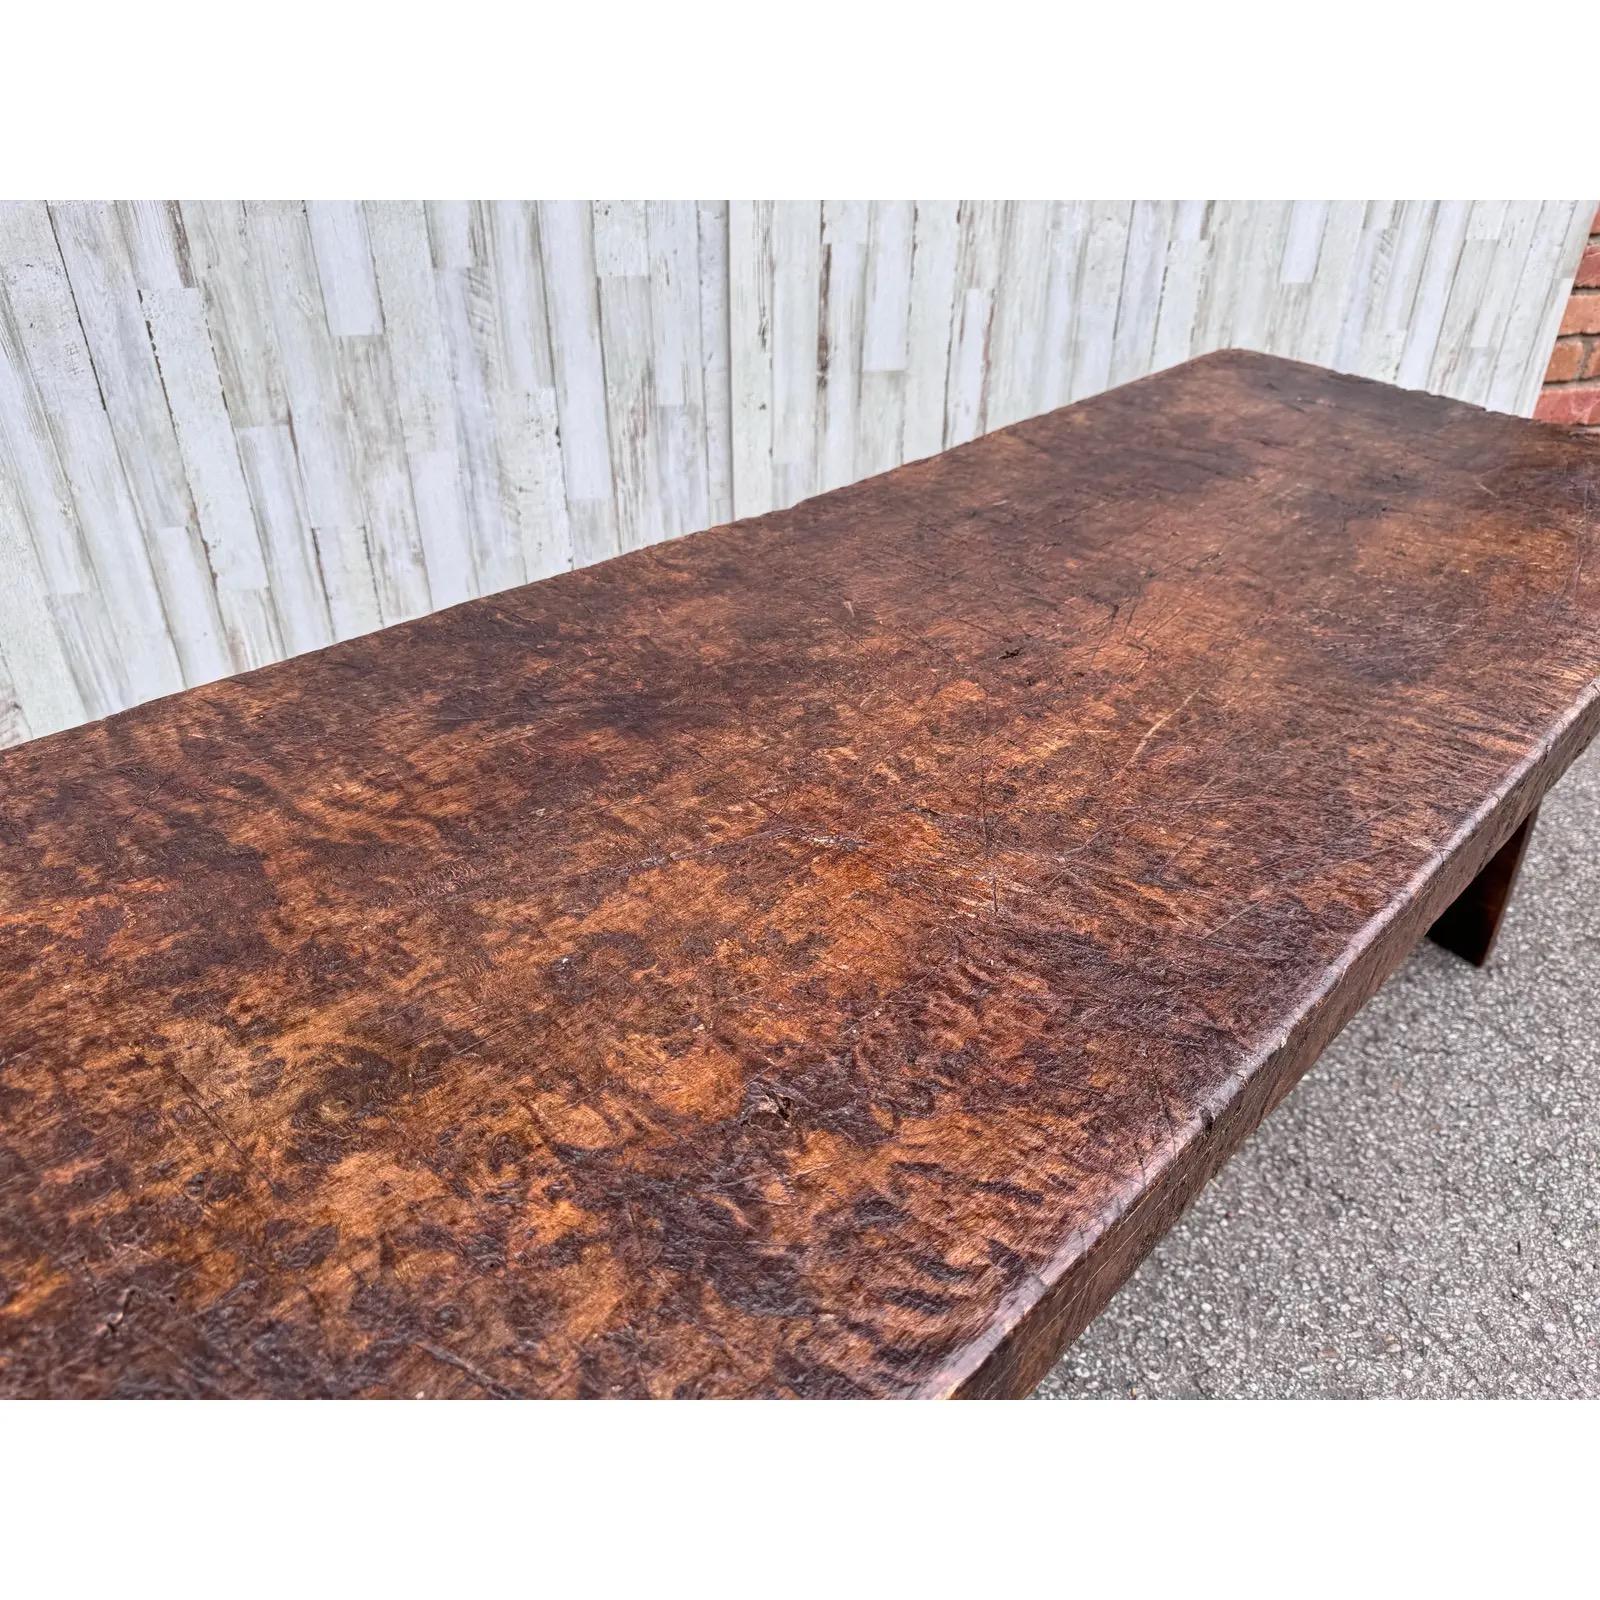 Voici une magnifique petite table basse anglaise ! À l'origine, cette table aurait été utilisée comme planche à découper dans une boucherie. Le dessus porte des marques de couteau dues à des années d'utilisation. Il s'est patiné au fil des ans, et